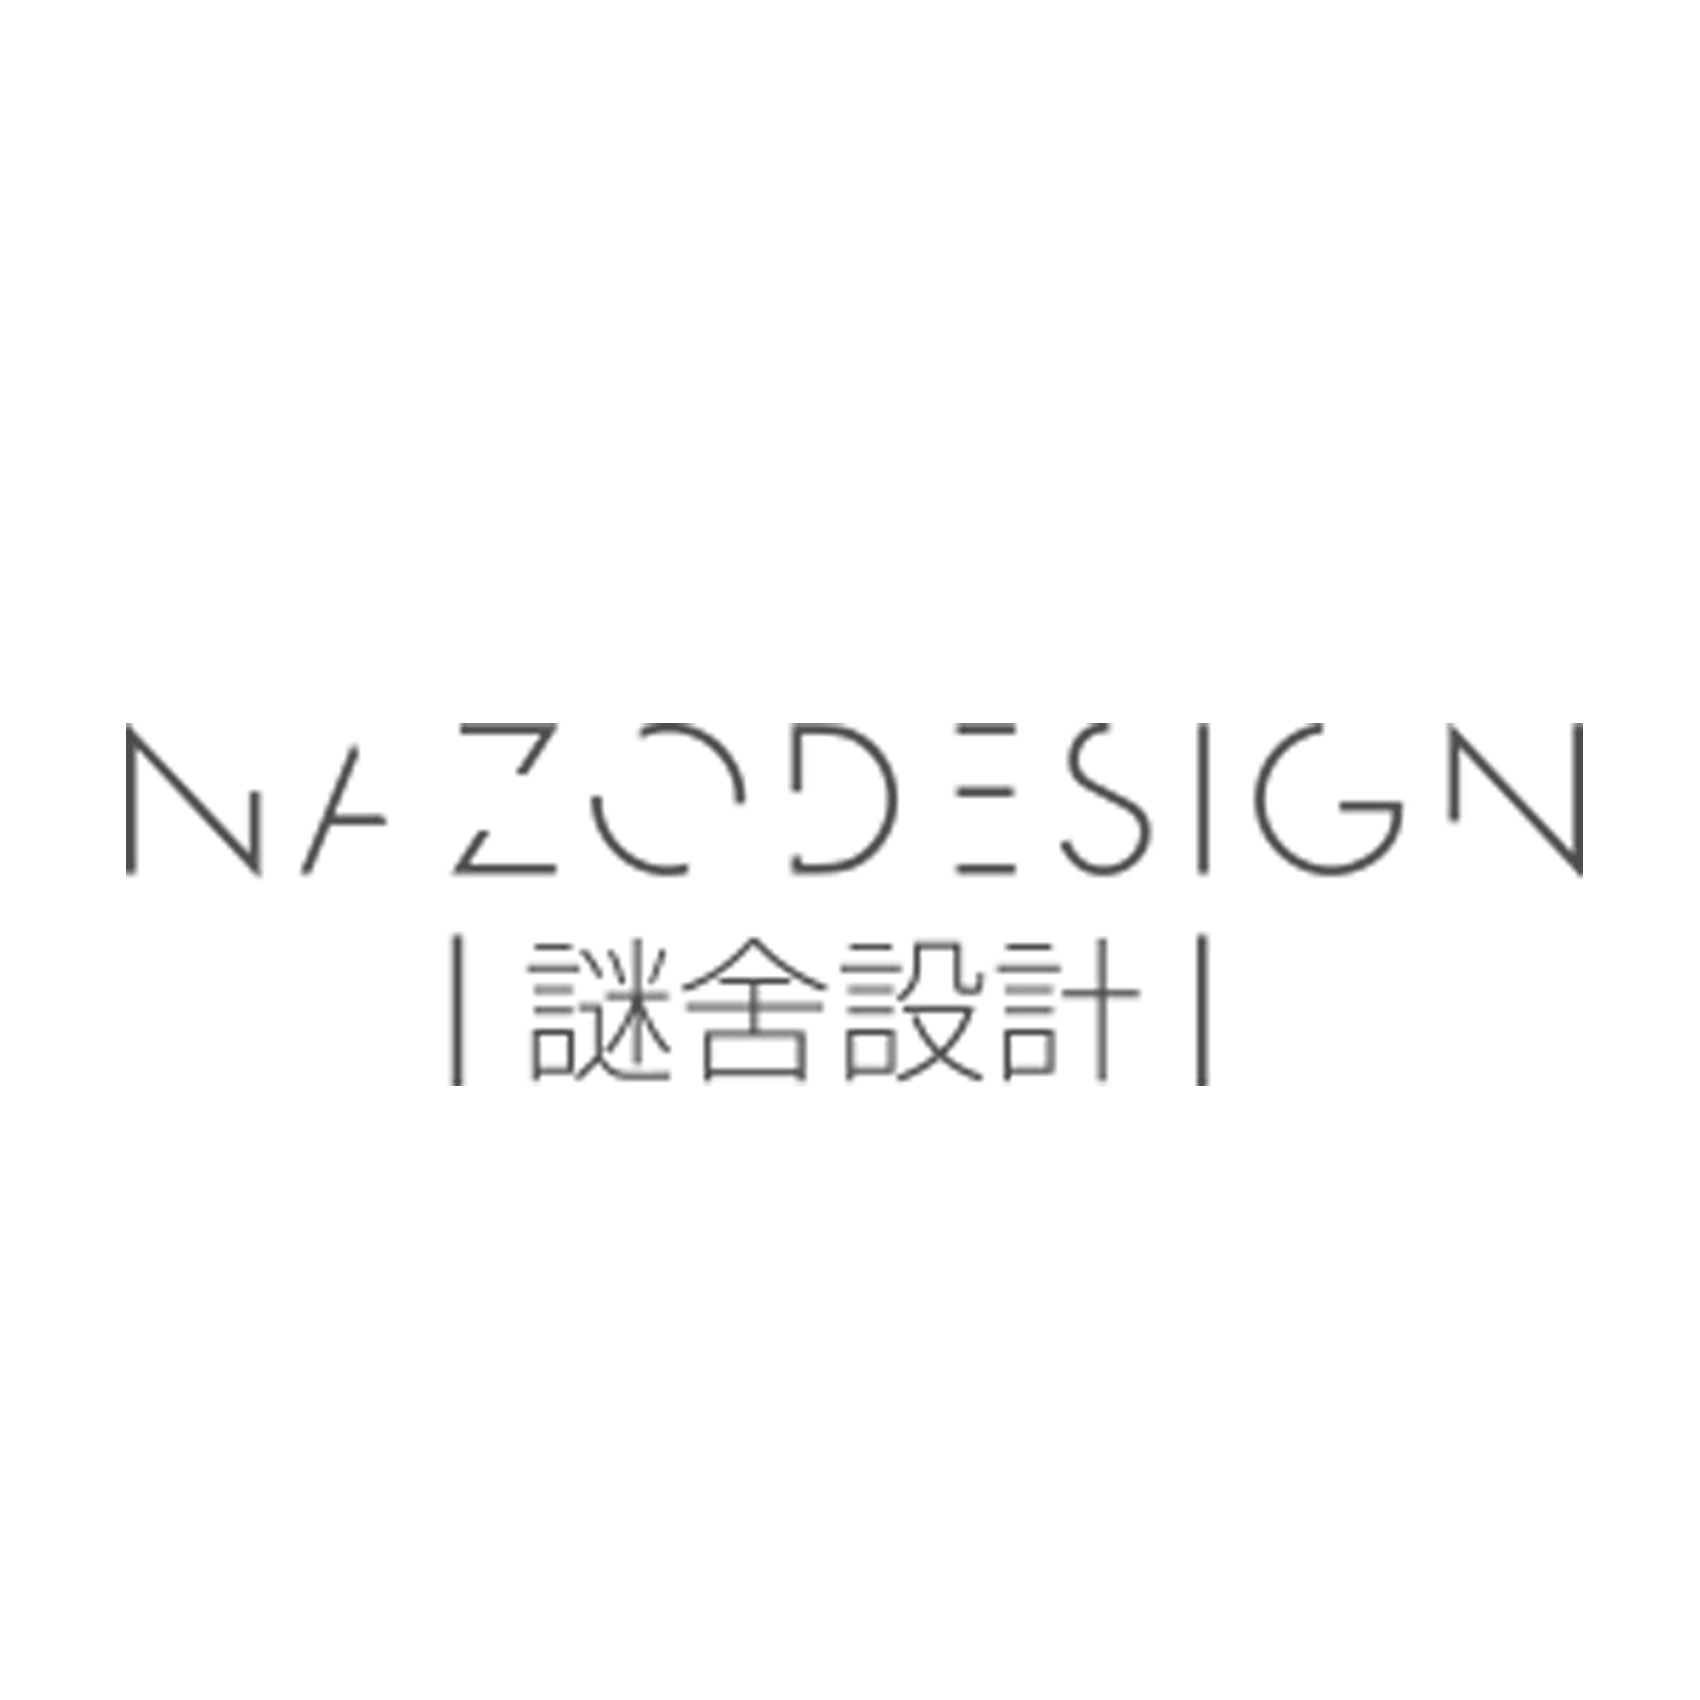 Nazodesign Studio